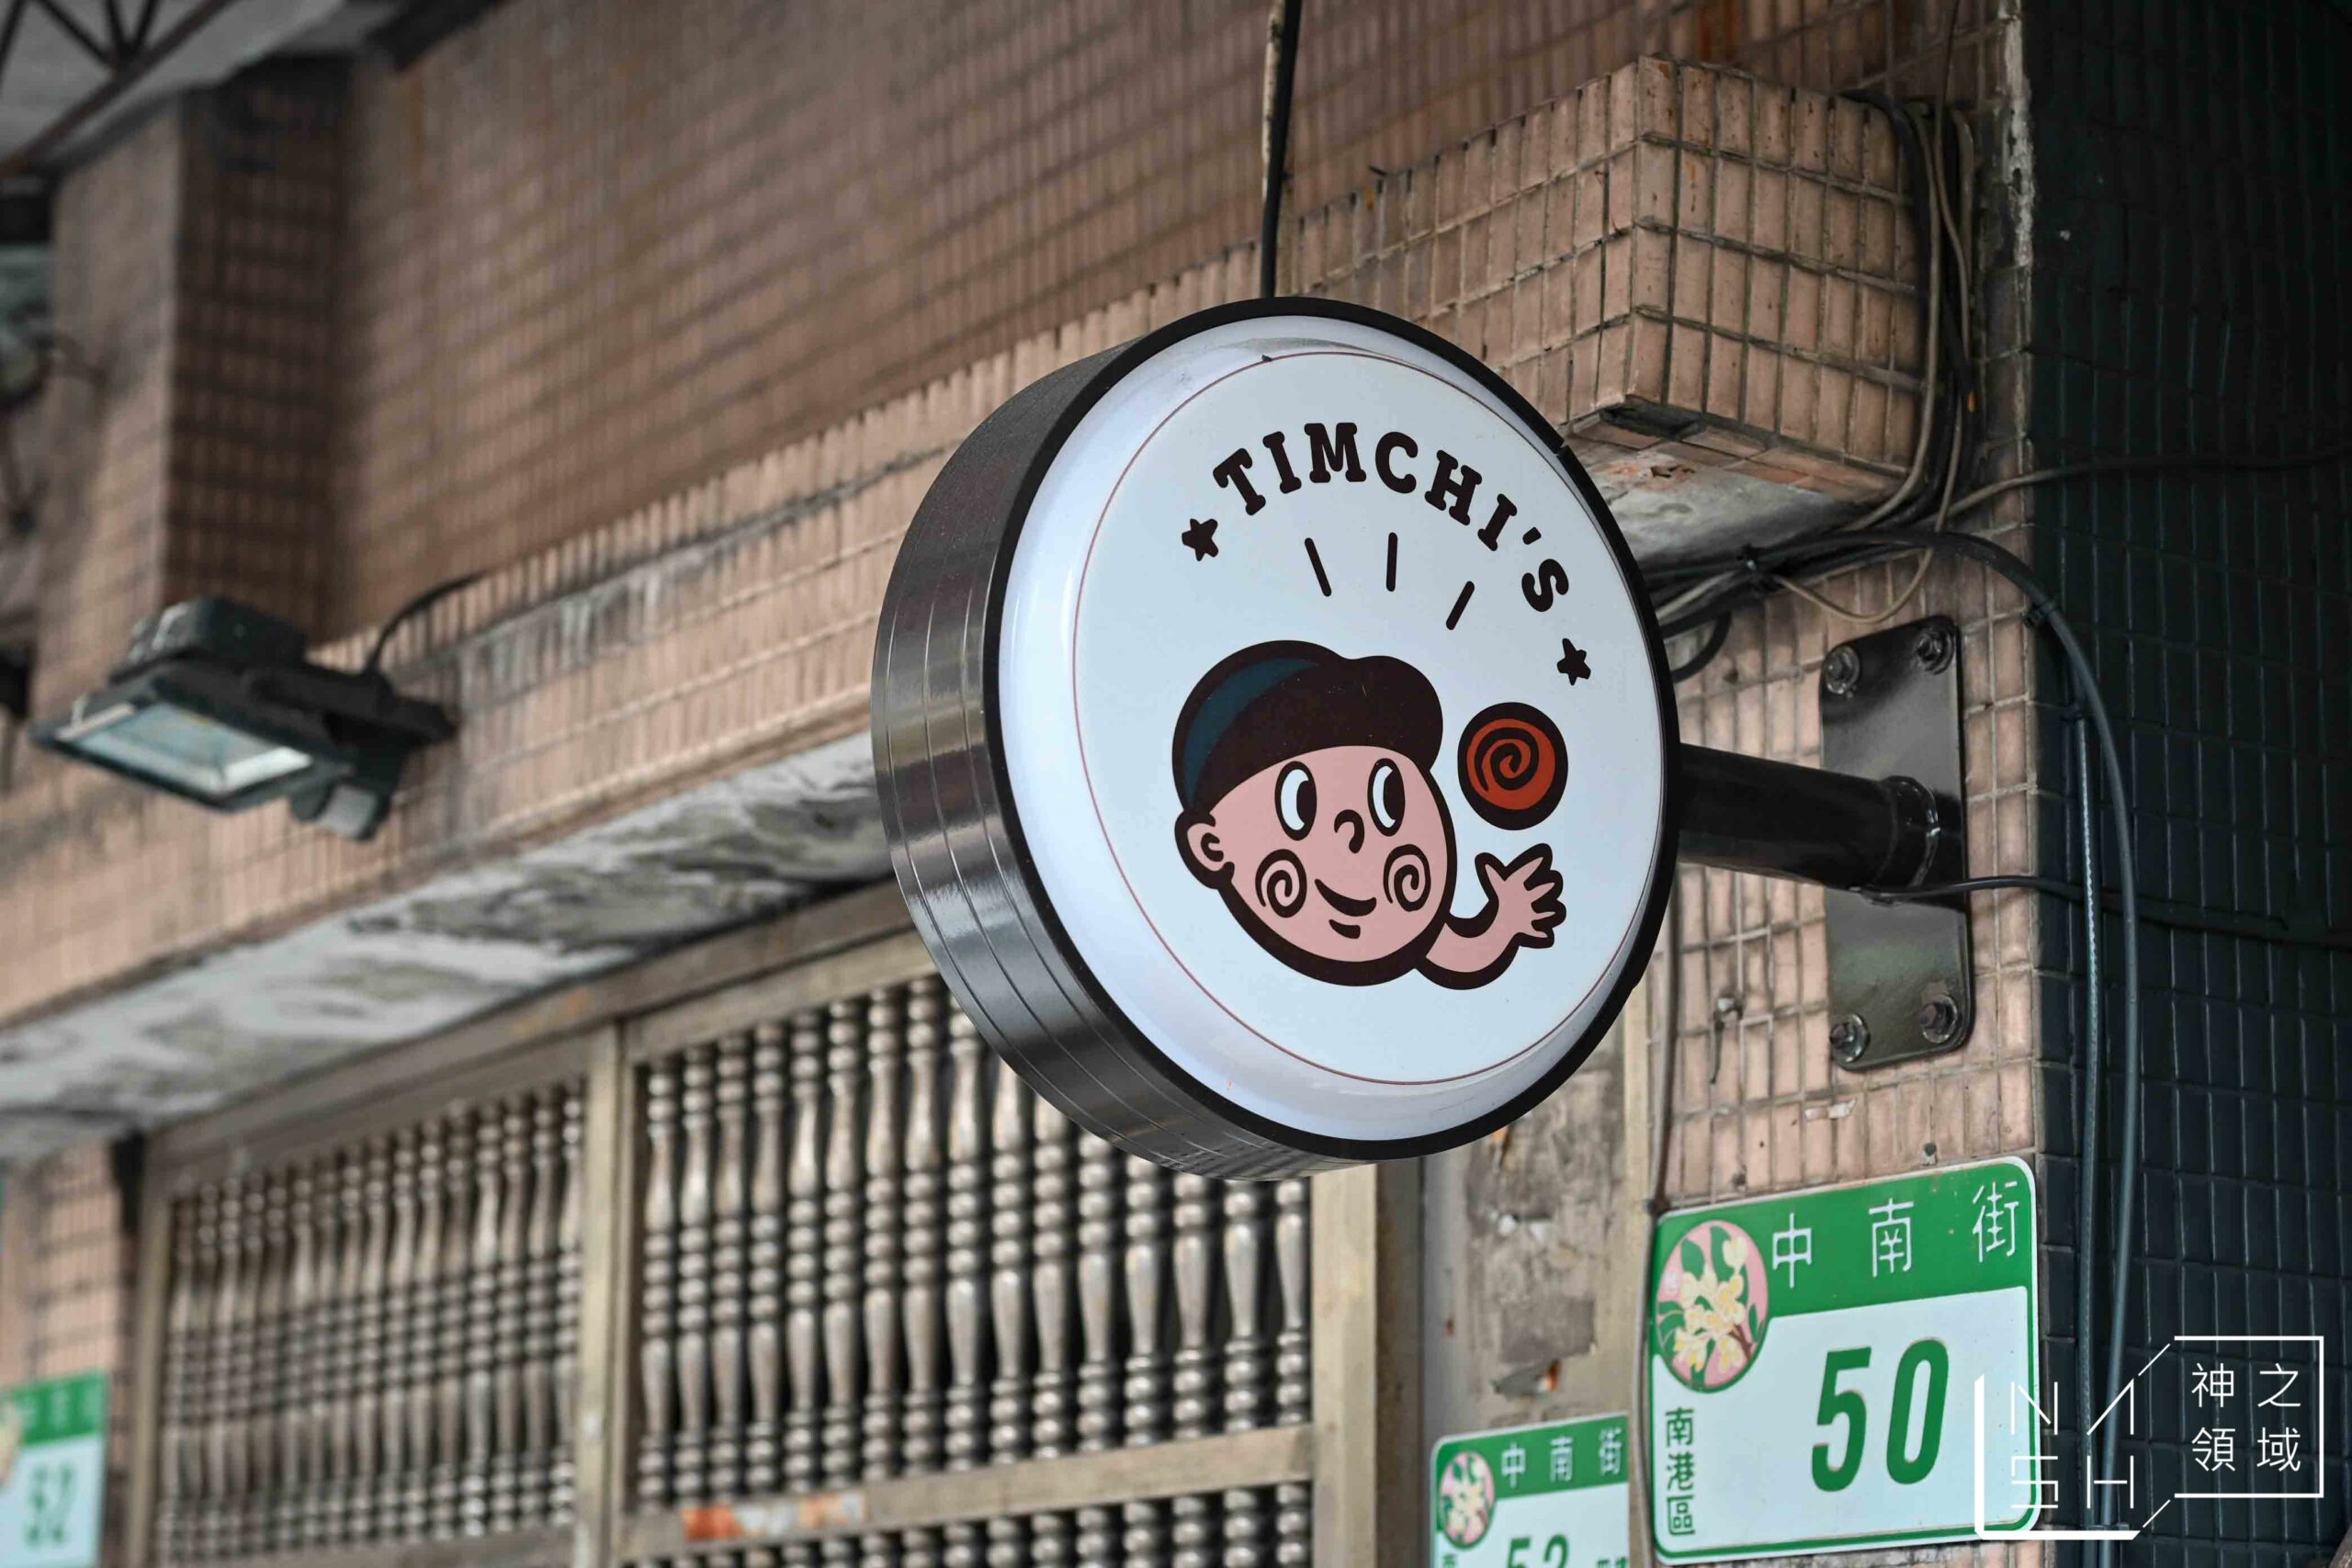 Timchi’s週末肉桂捲